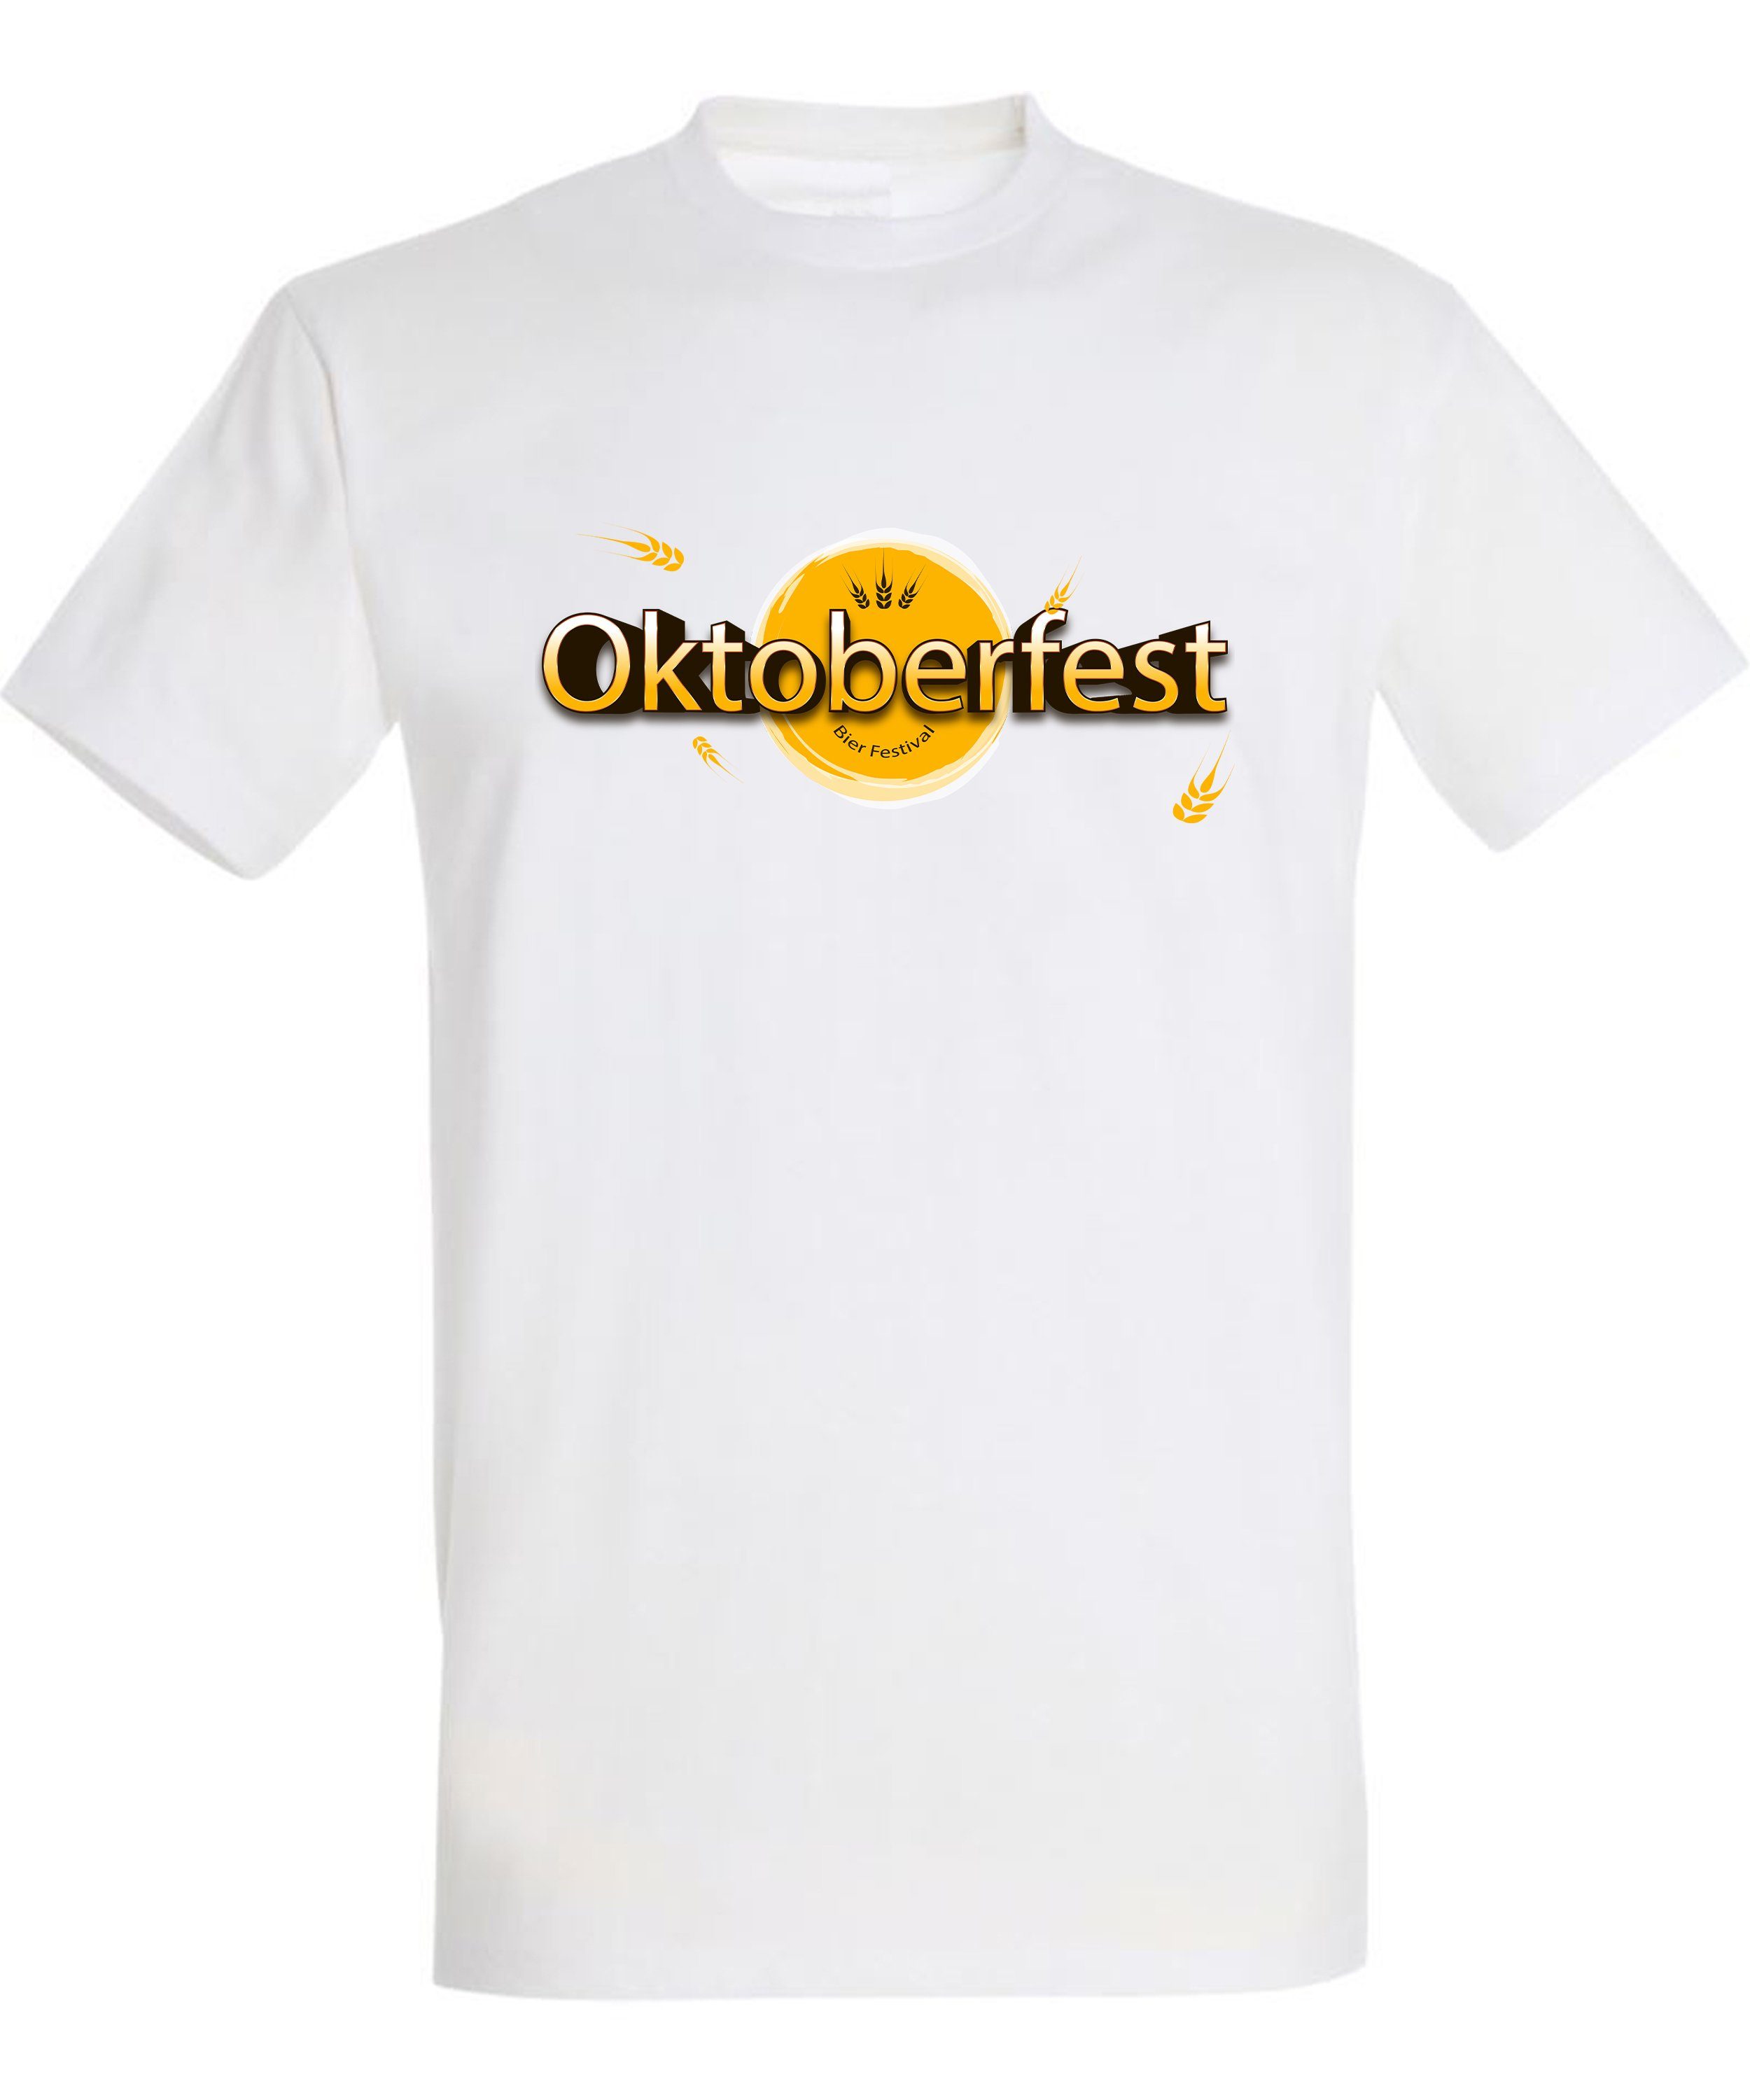 - MyDesign24 Fit, Regular Herren Party T-Shirt mit Bier Baumwollshirt T-Shirt Shirt Festival Oktoberfest i325 Aufdruck Trinkshirt weiss